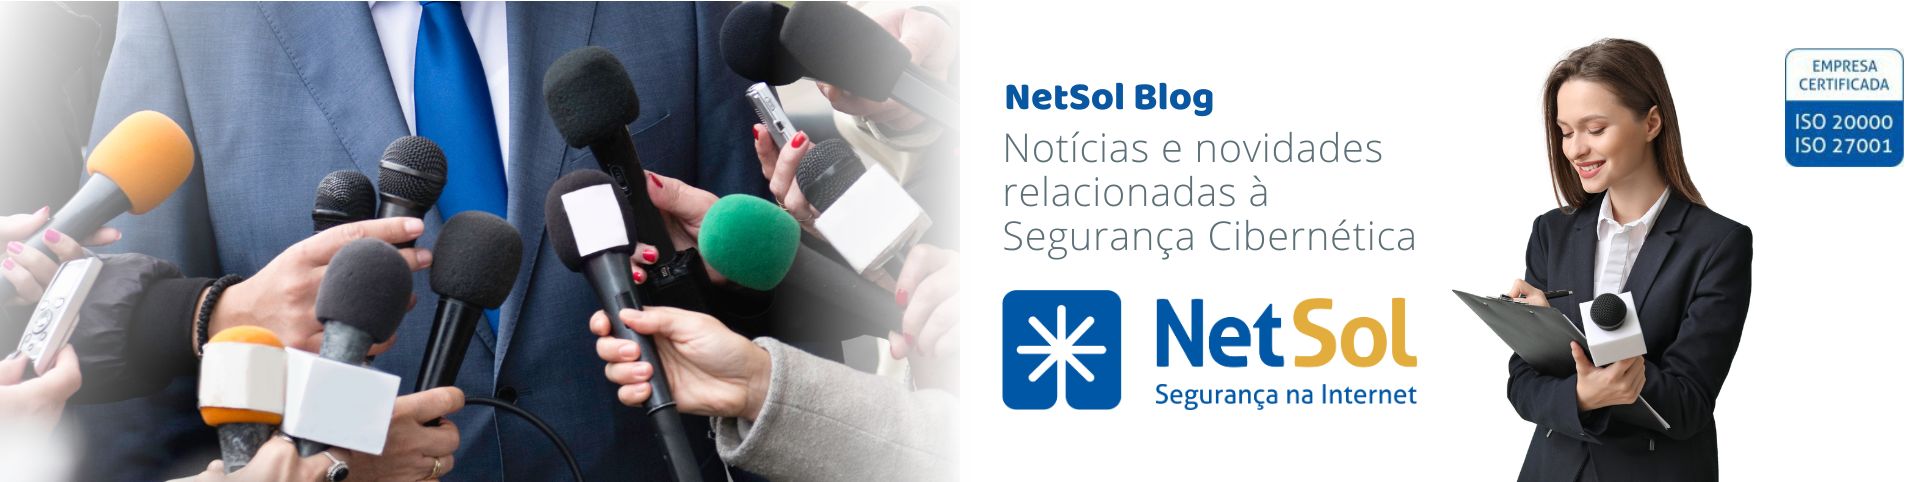 NetSol_Blog